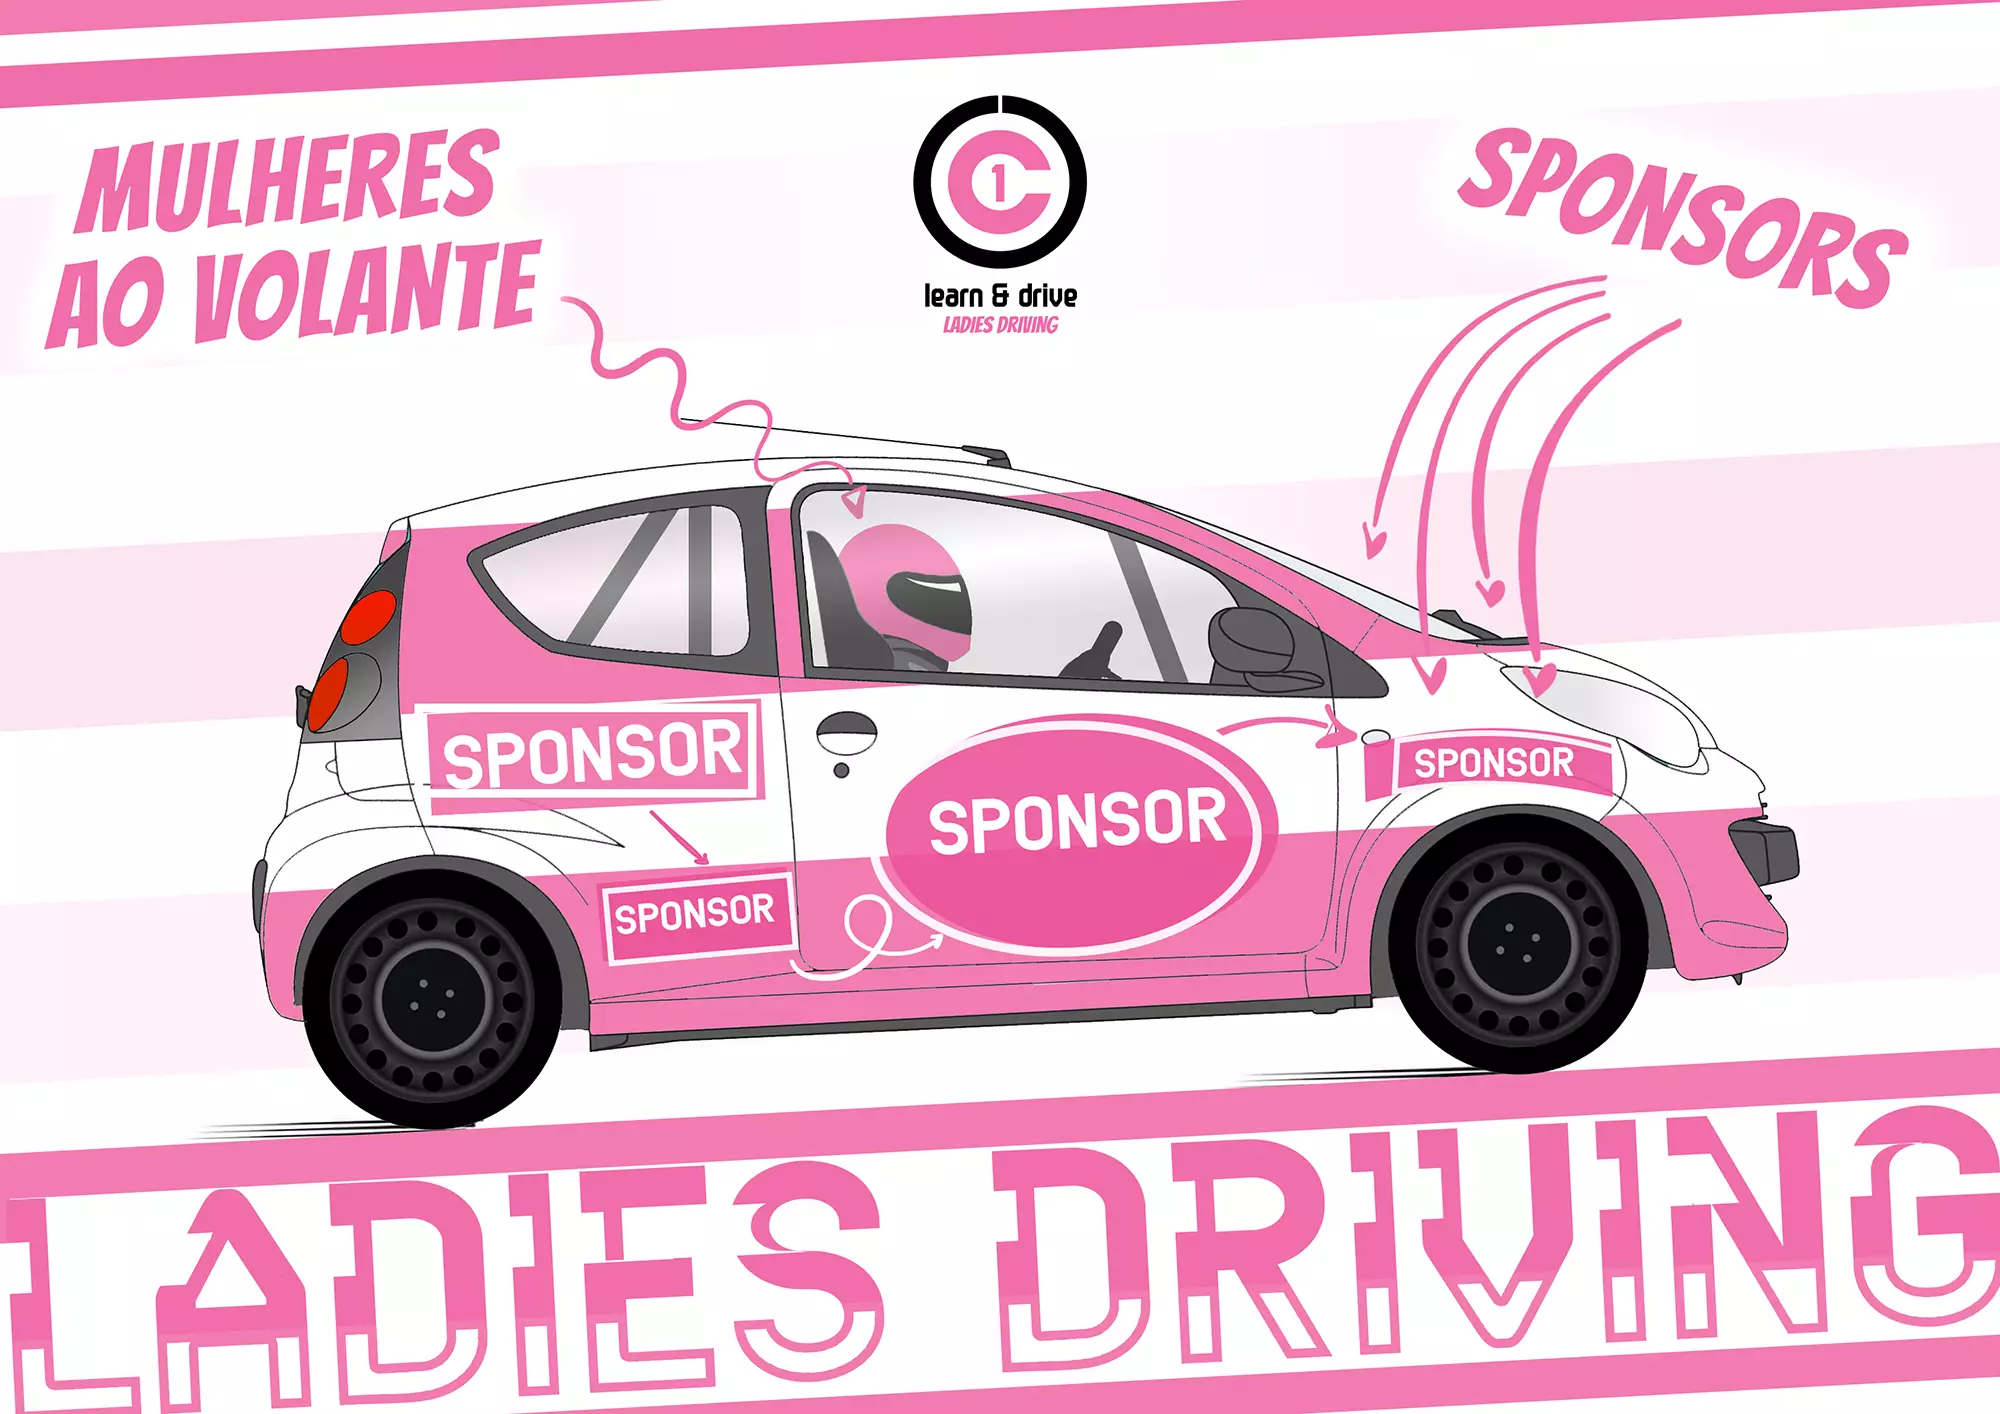 C1 Ithute & Drive Trophy — C1 Ladies Drive